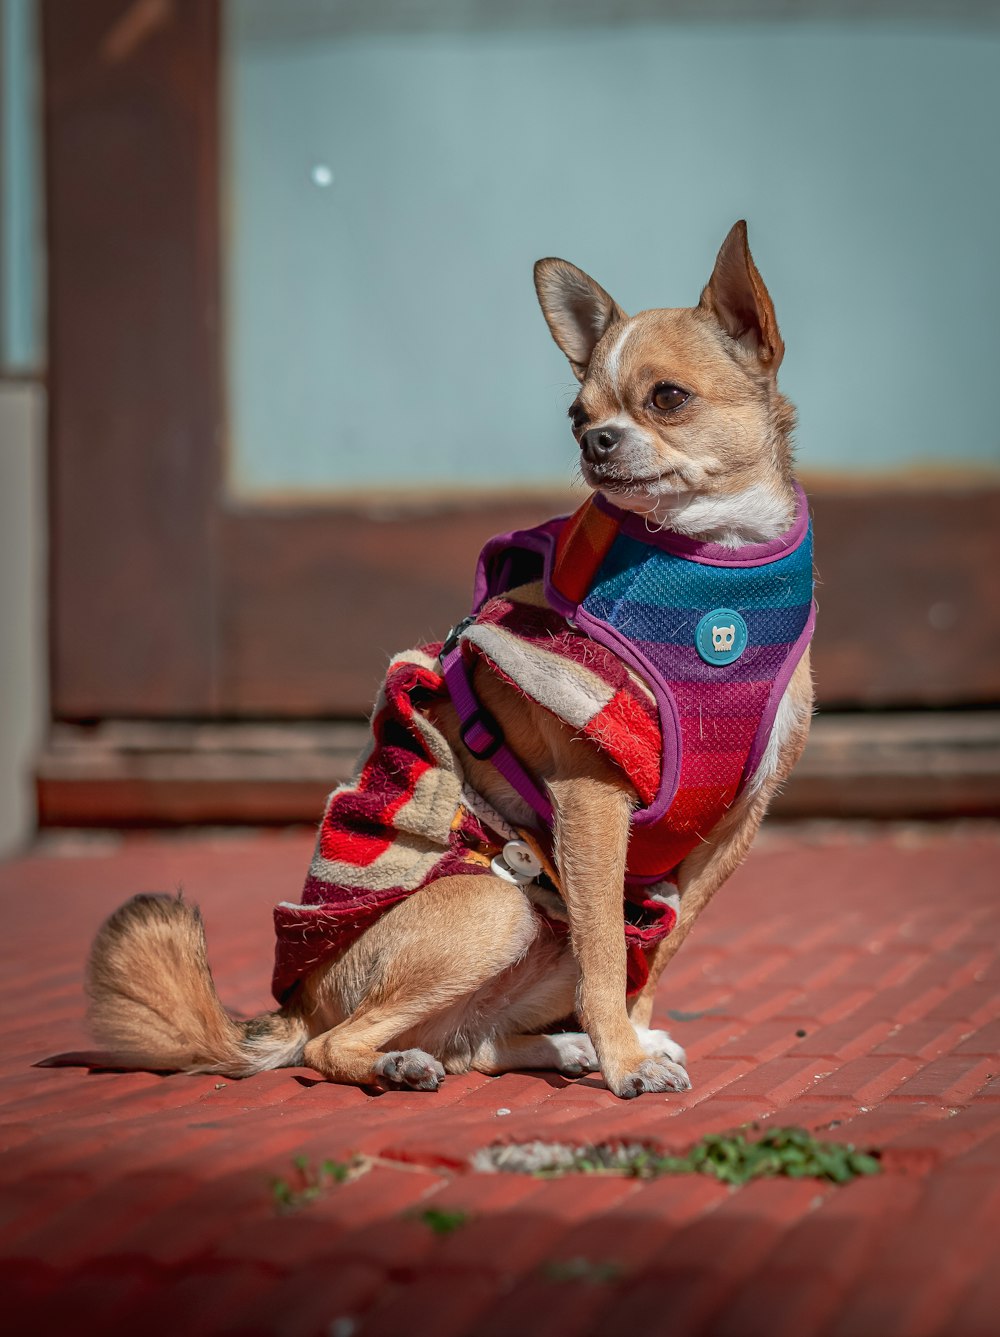 地面に座っているセーターを着た小さな犬